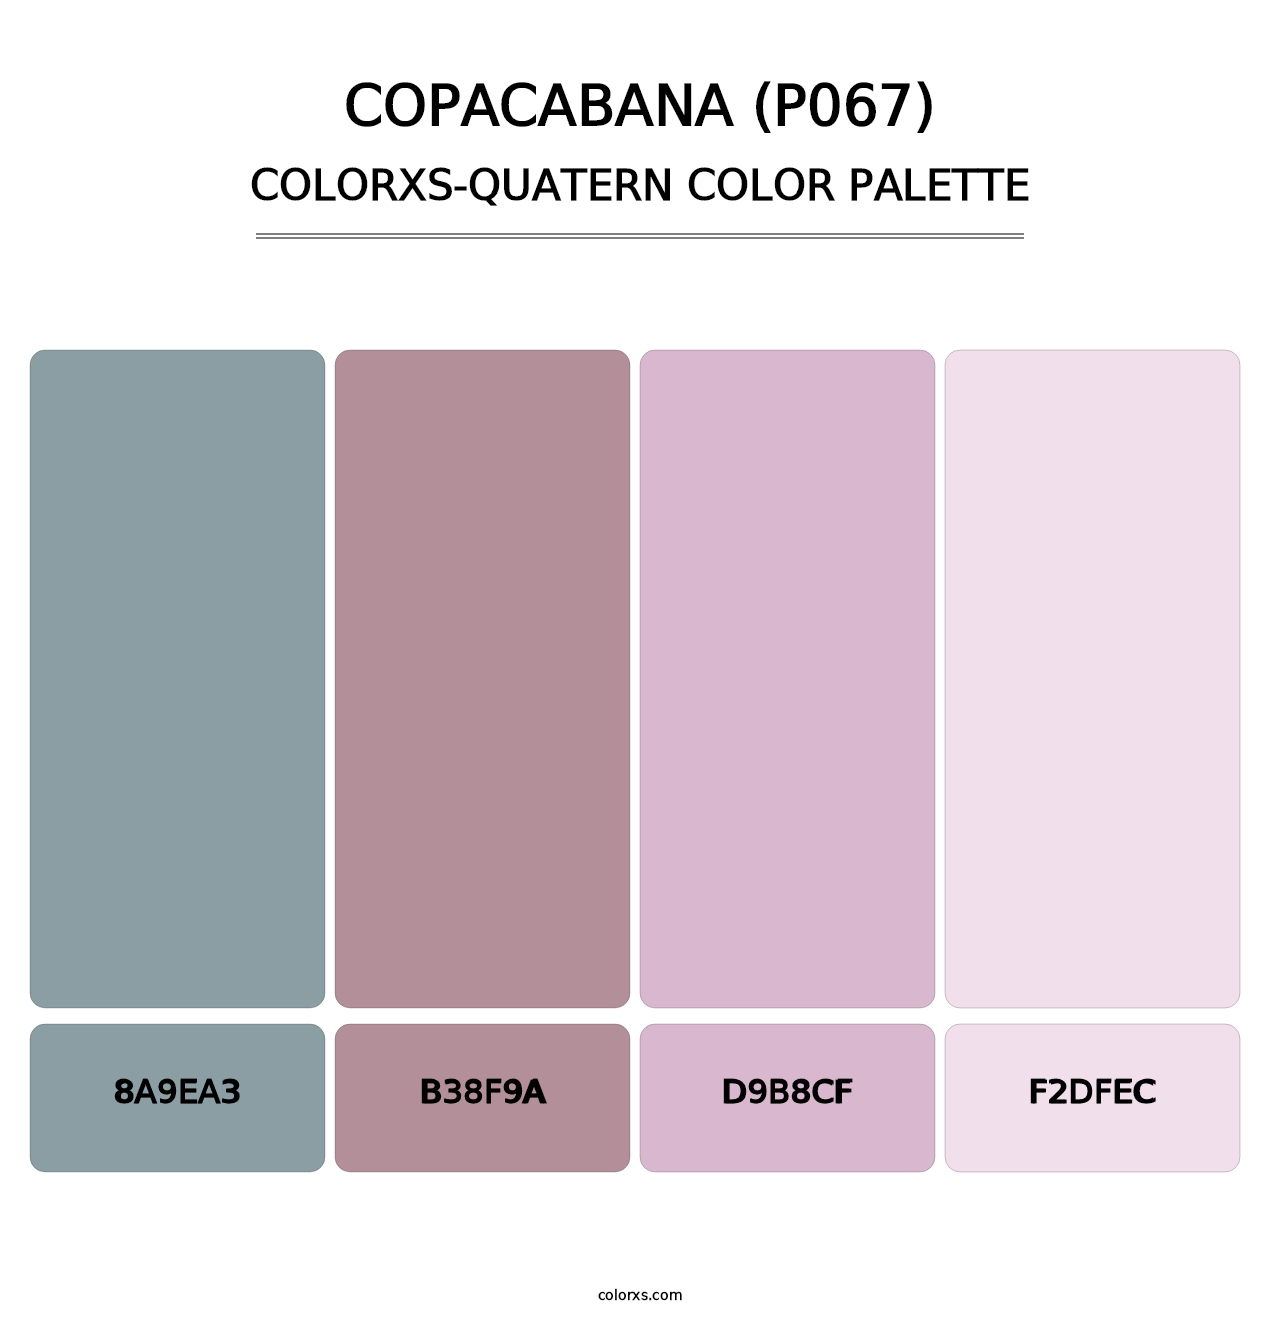 Copacabana (P067) - Colorxs Quatern Palette